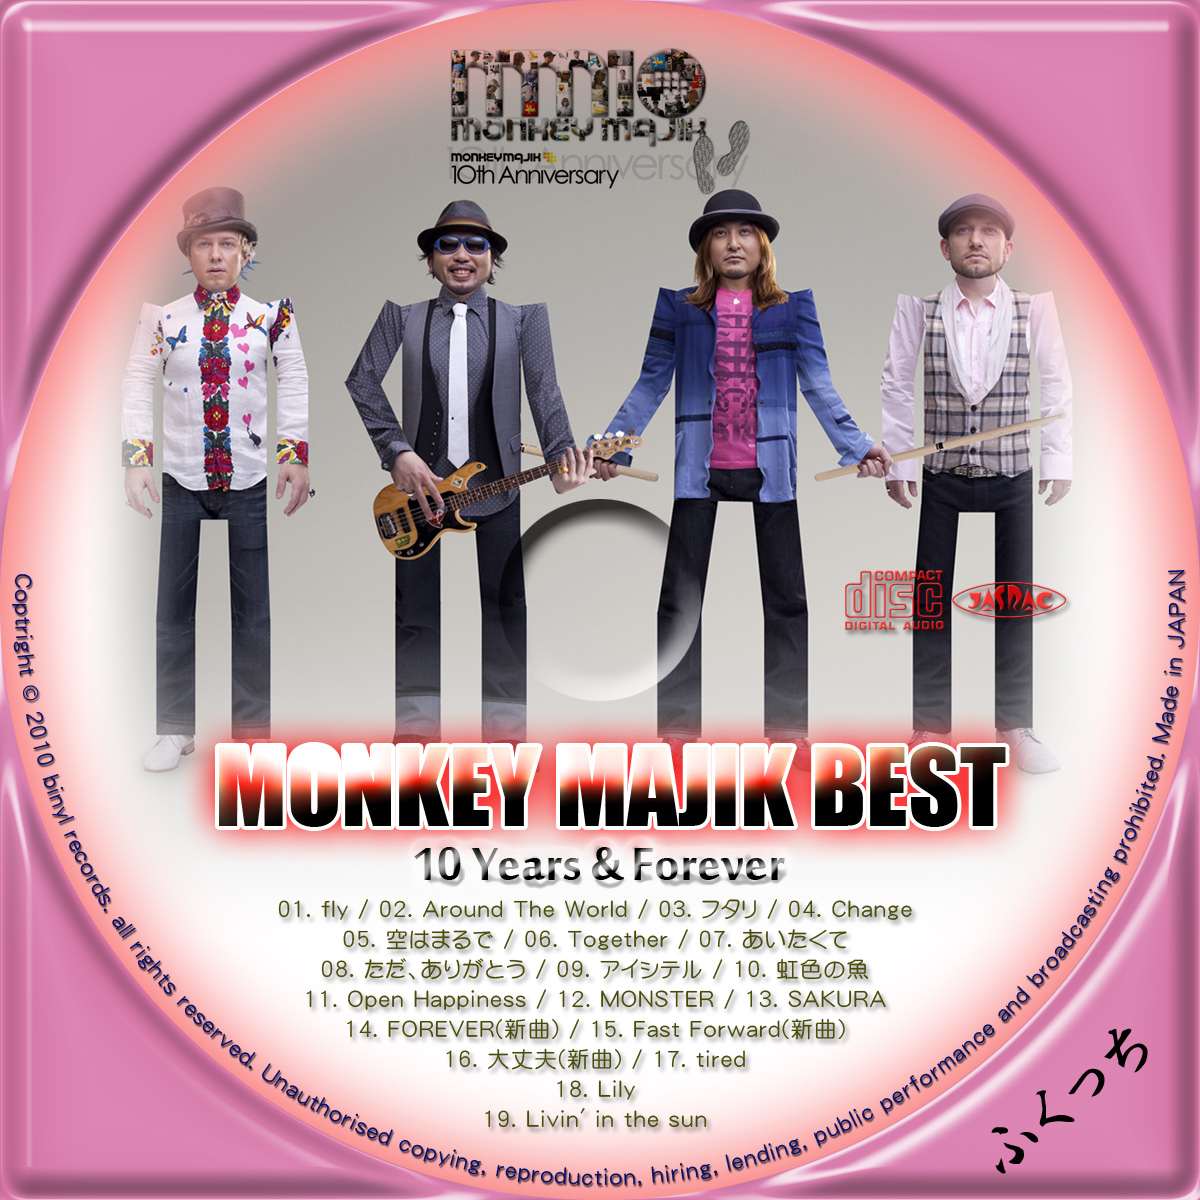 ふくっちの音楽CD/DVDカスタムレーベル MONKEY MAJIK - MONKEY MAJIK BEST ~10 Years  Forever~